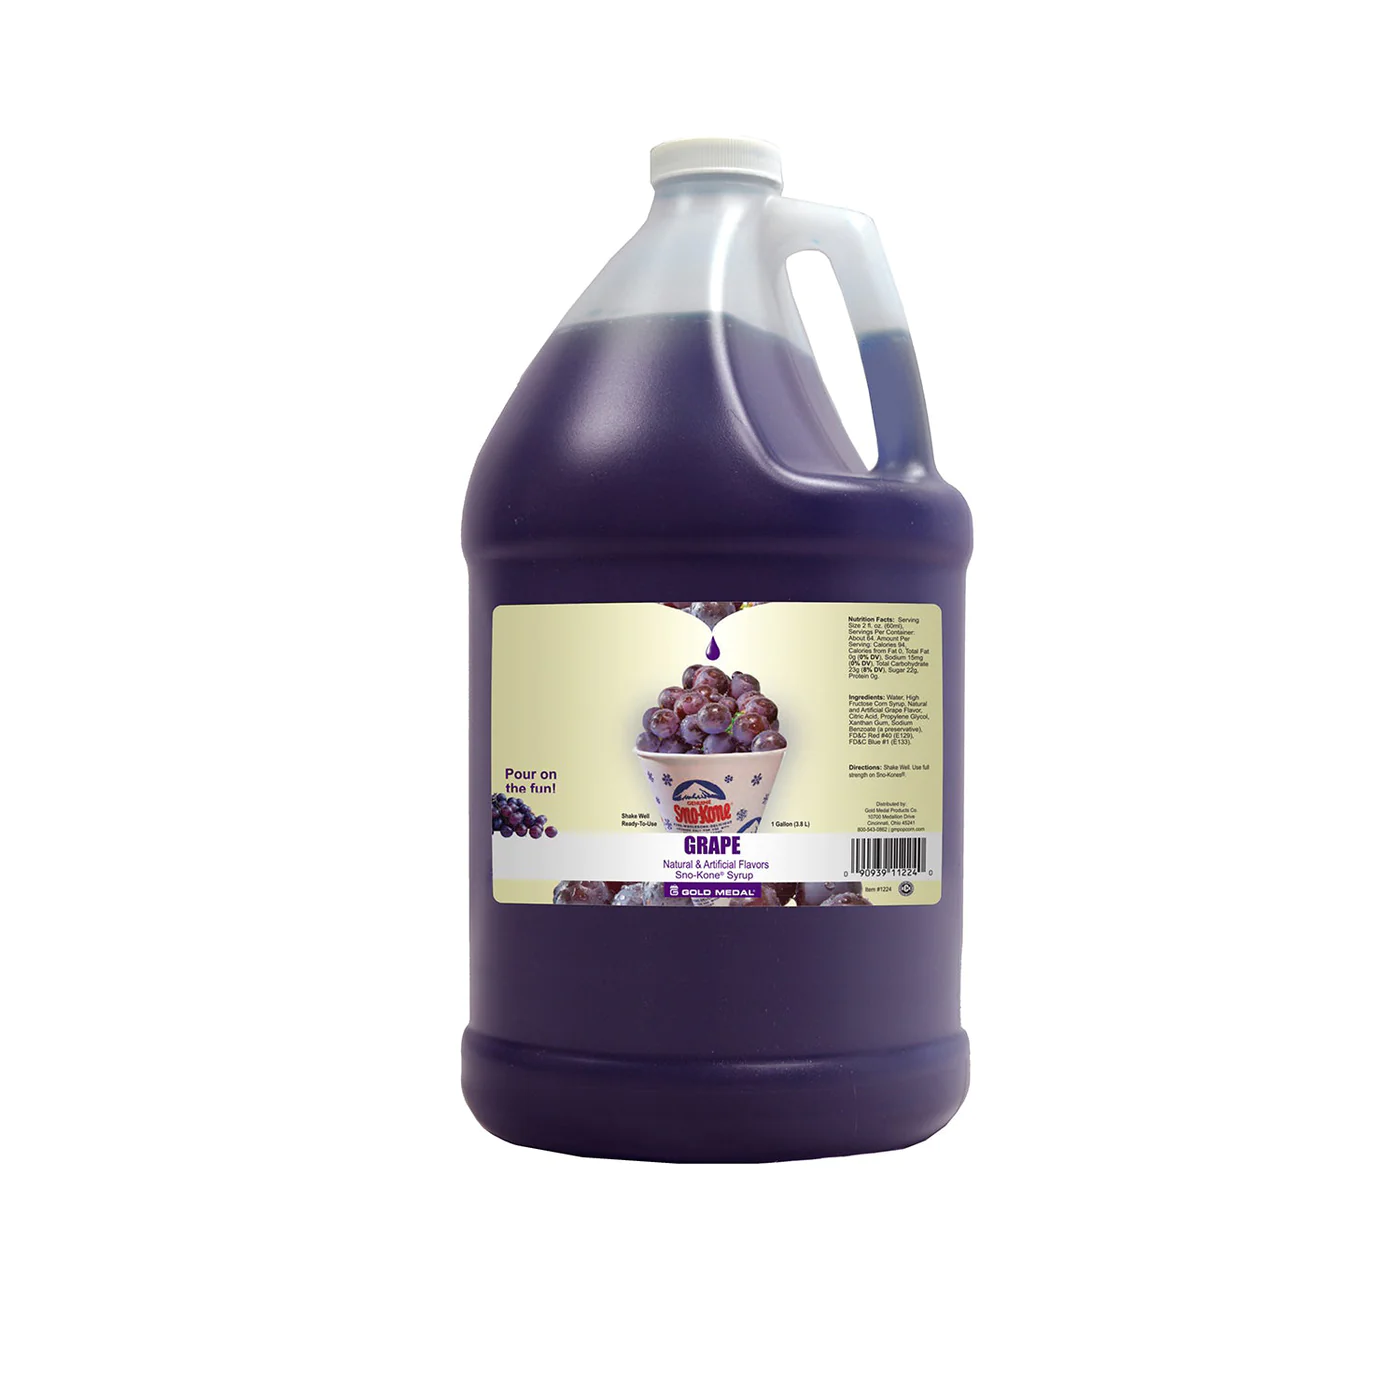 Grape Snow Cone Syrup -1 Gallon